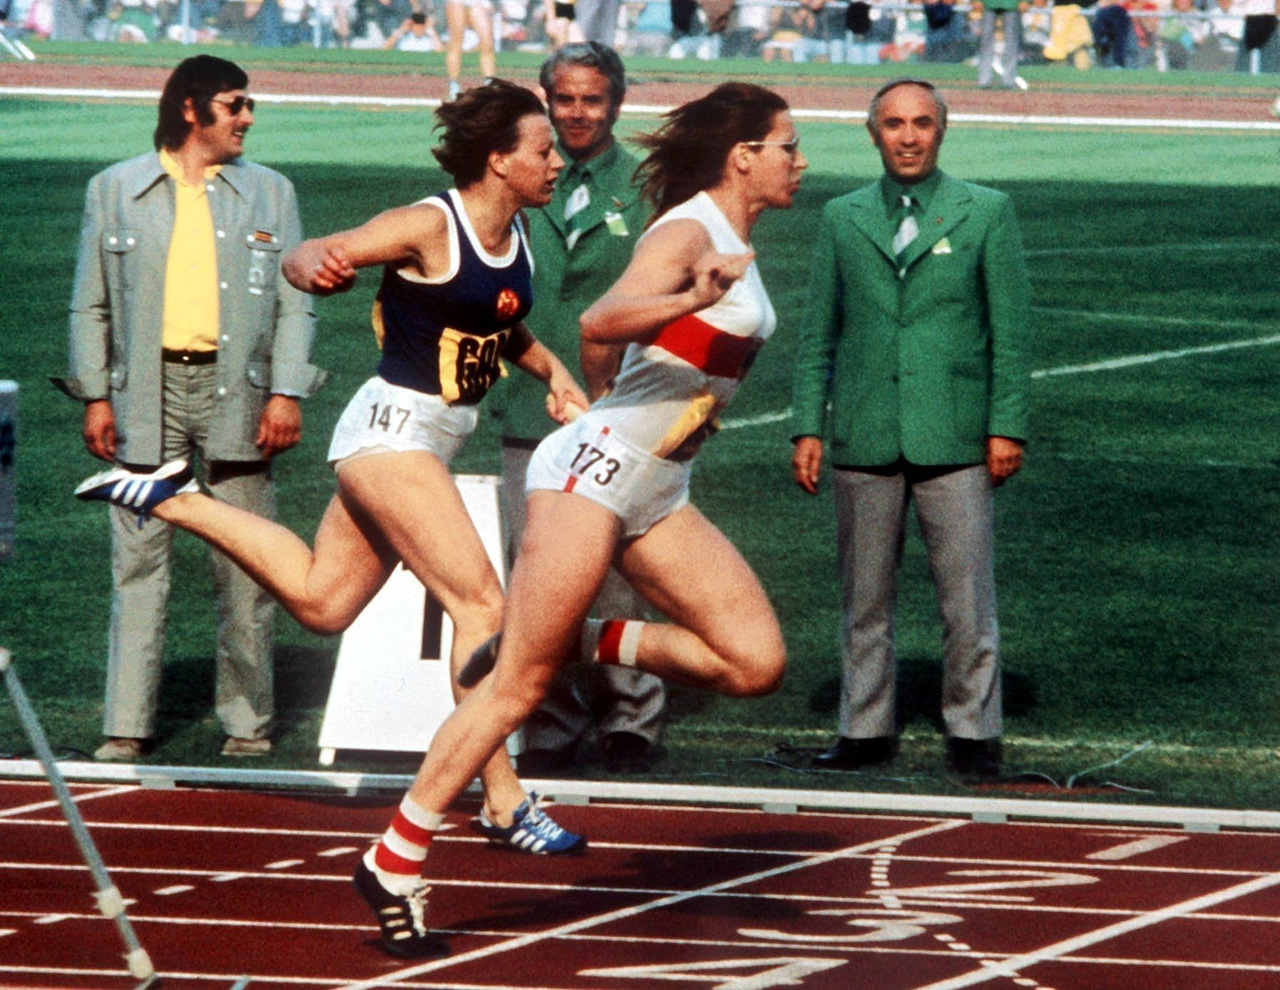 Spannender Zieleinlauf: Beim 4 mal 100- Meter-Staffel-Lauf der Frauen kämpfen die Teams von DDR und BRD um den Sieg. Heide Rosendahl (rechts) kann den Vorsprung des BRD-Teams gegen Renate Stecher (links) aus der DDR verteidigen.